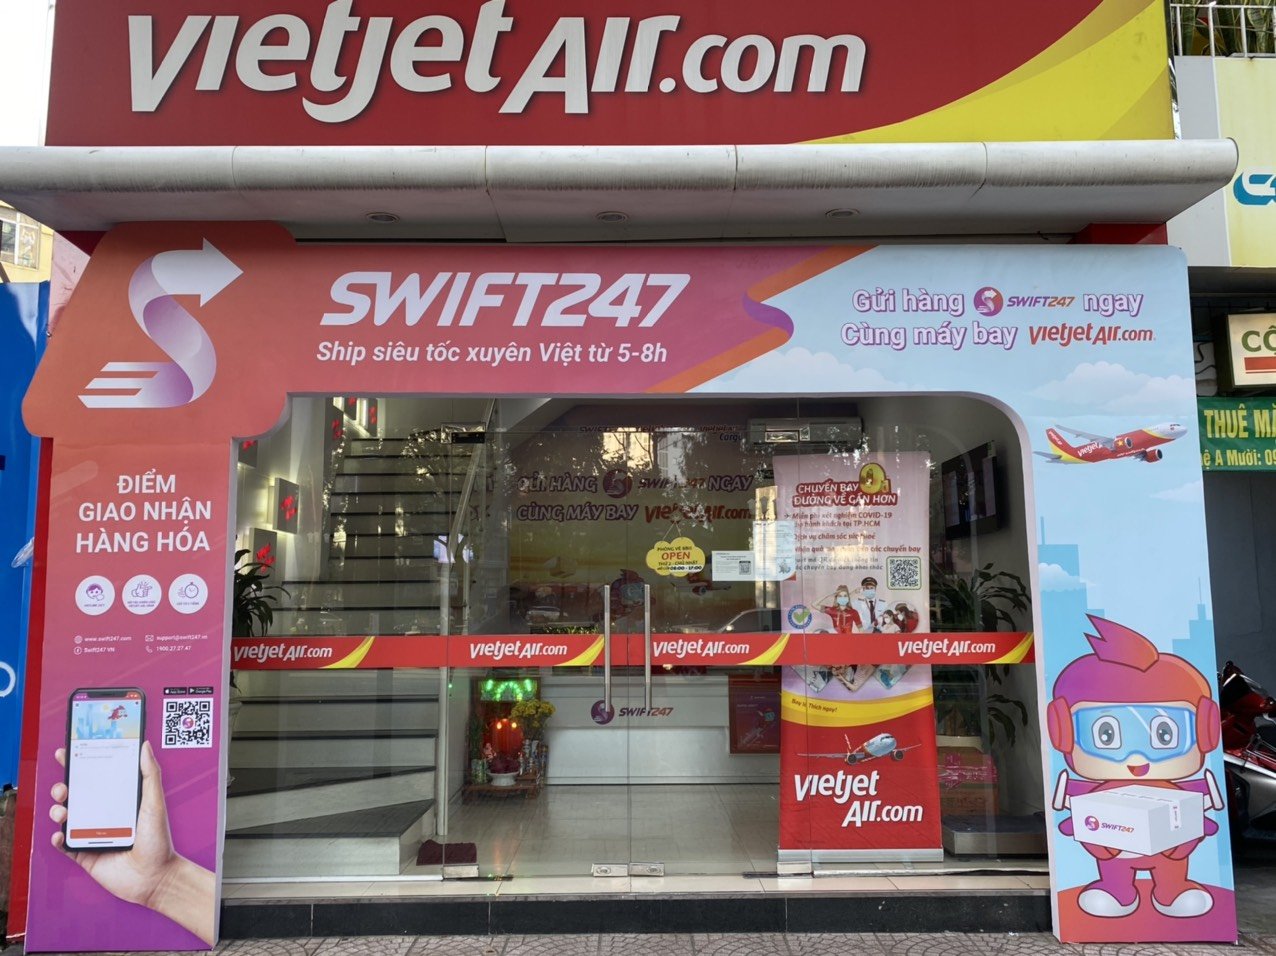 SWIFT 247 tưng bừng ra mắt dịch vụ giao hàng siêu tốc Hàn Quốc - Việt Nam - Ảnh 3.